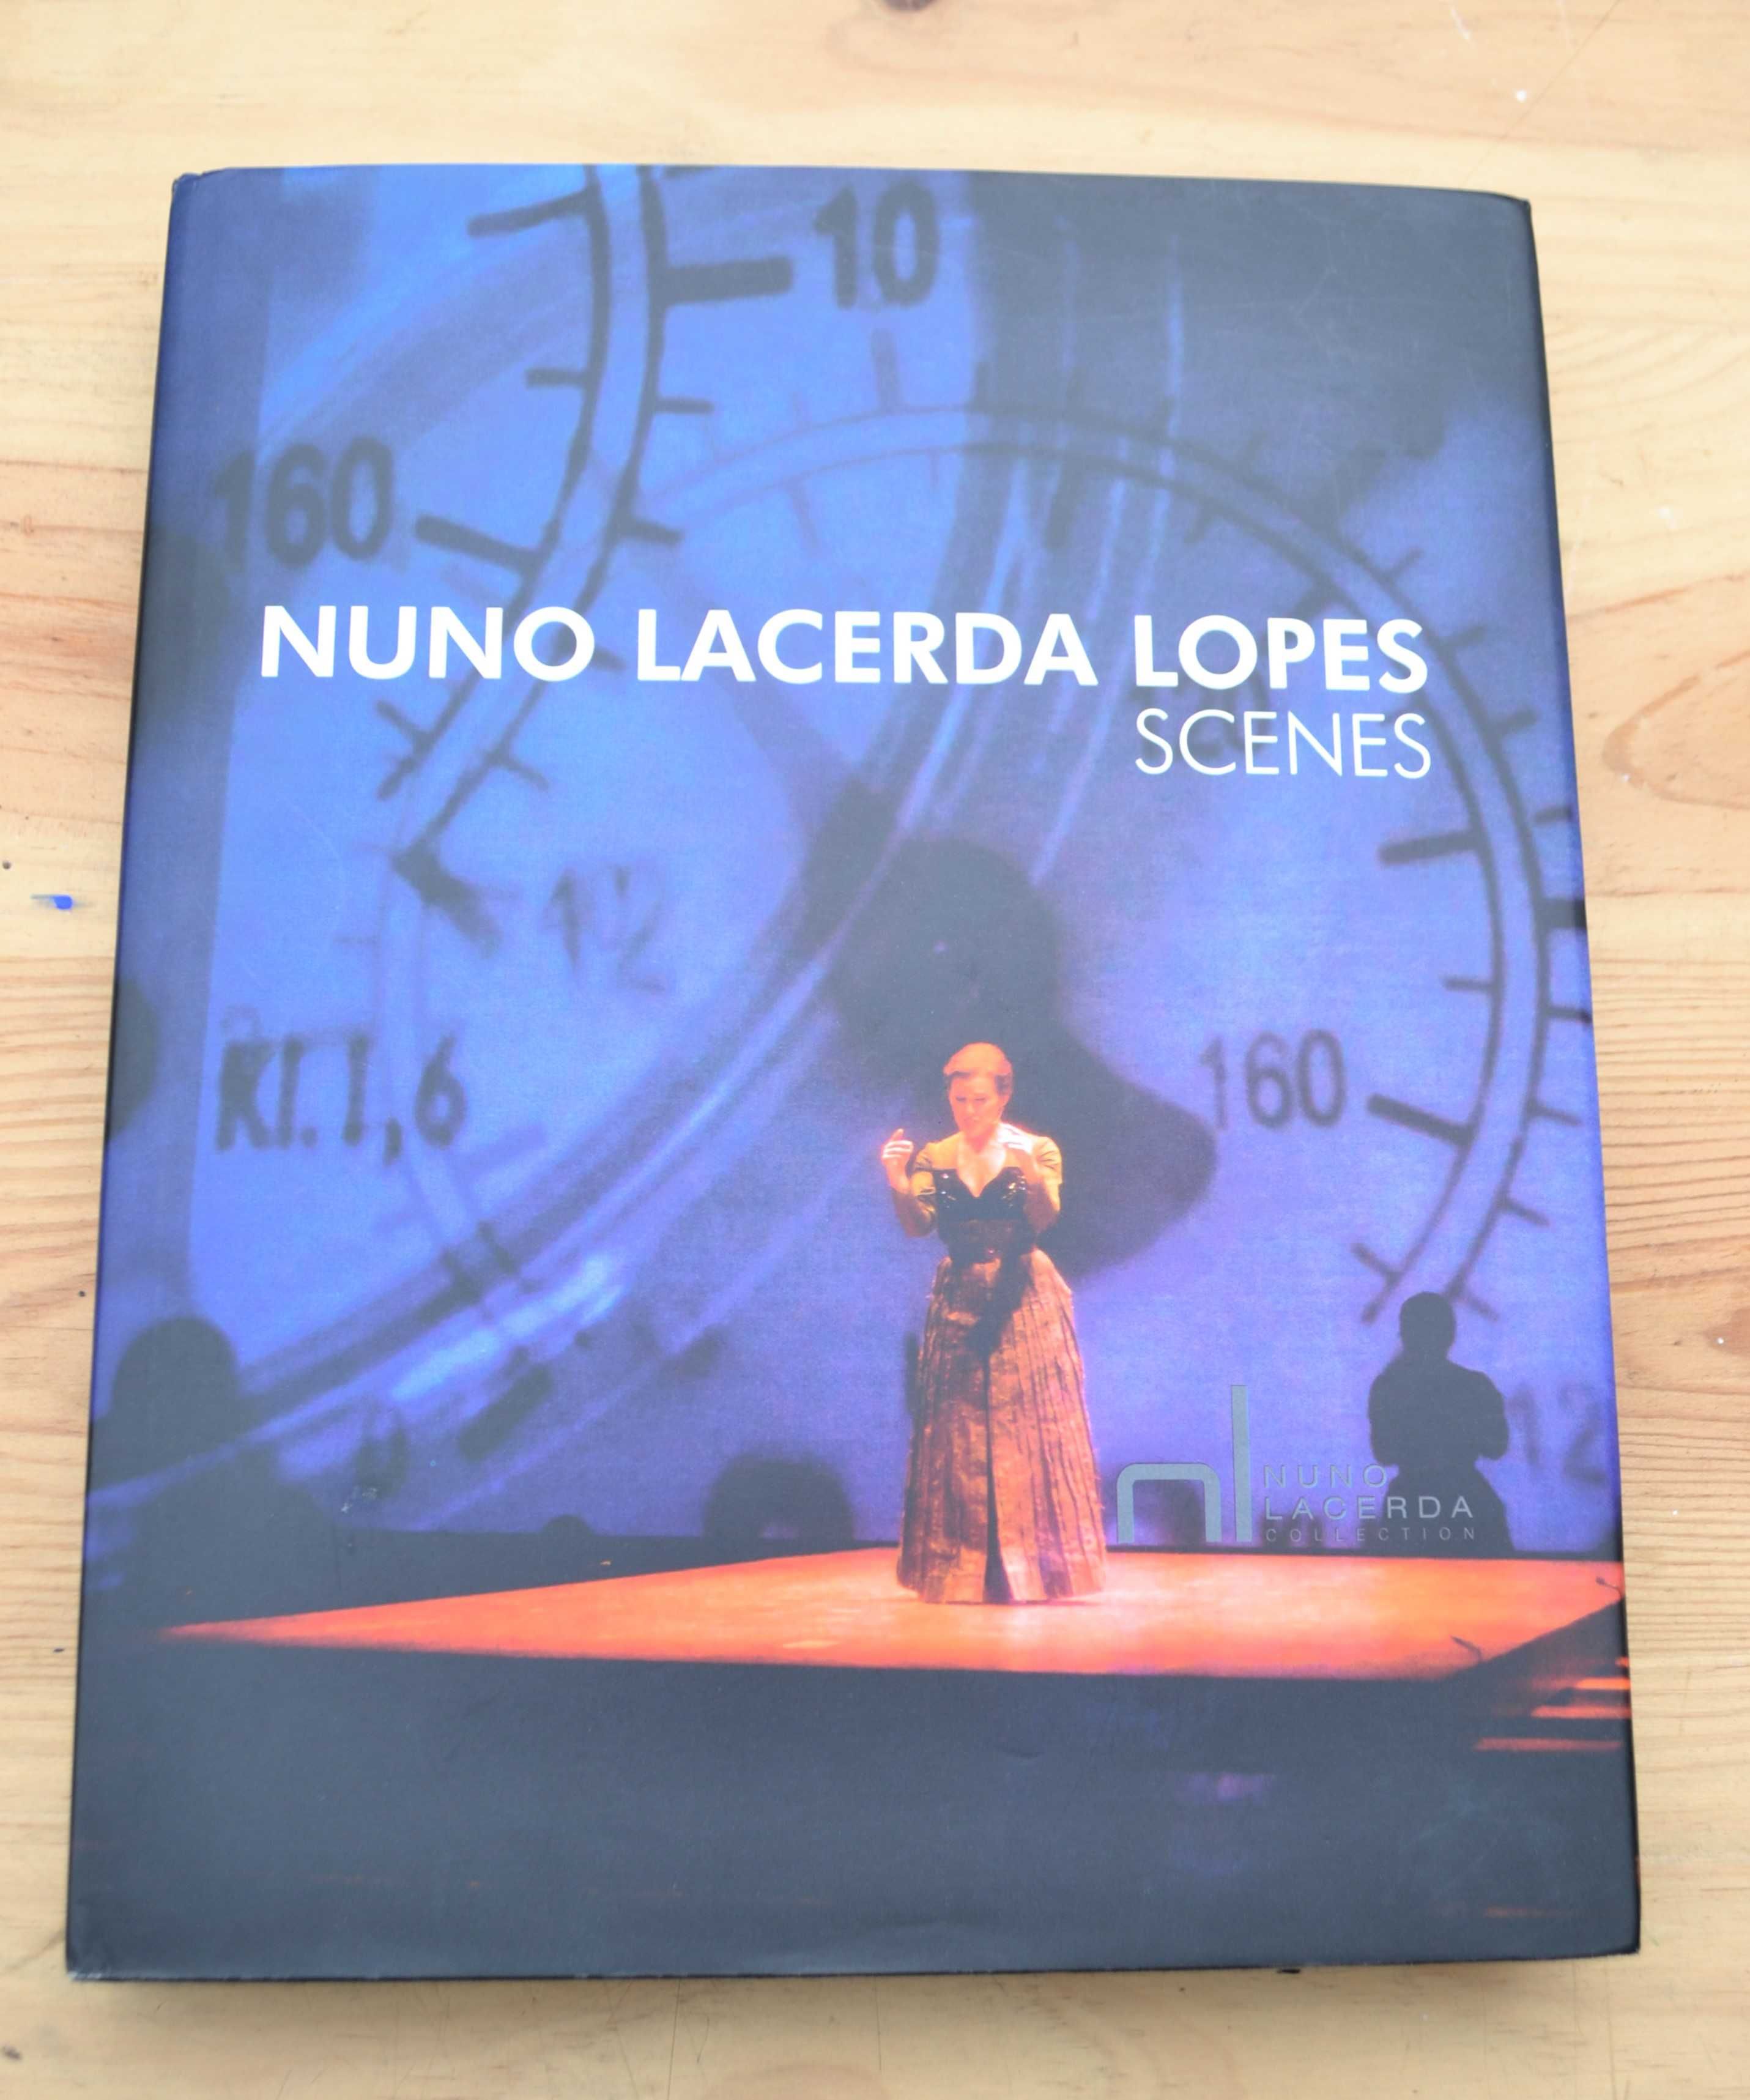 Nuno Lacerda Lopes. Scenes
.